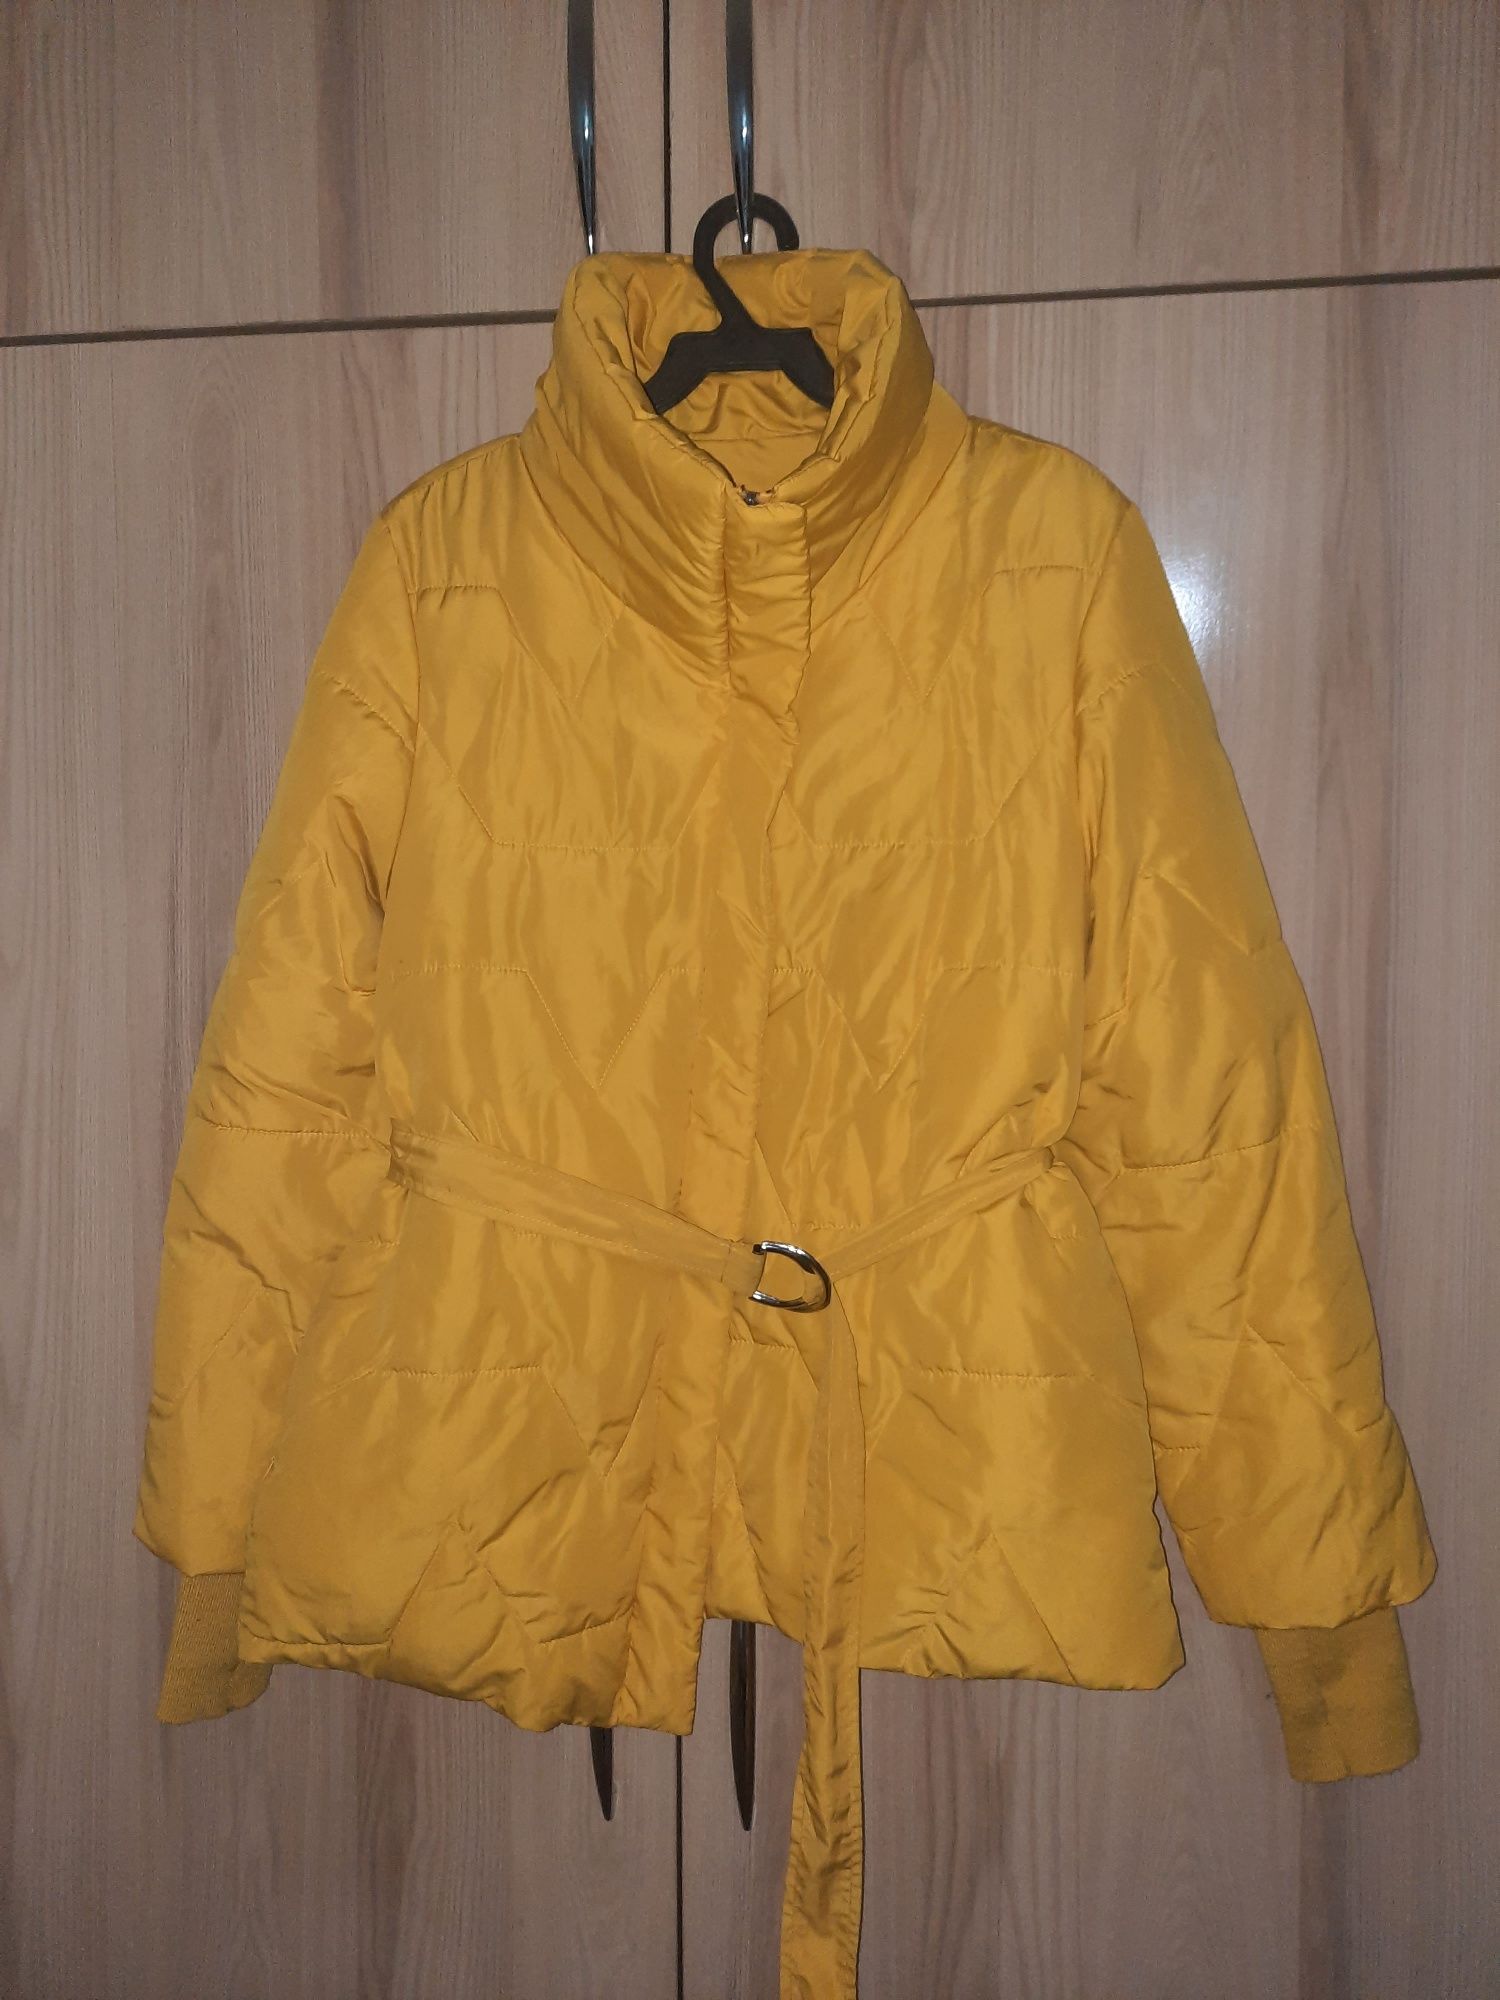 Куртка жёлтого цвета в отличном состоянии